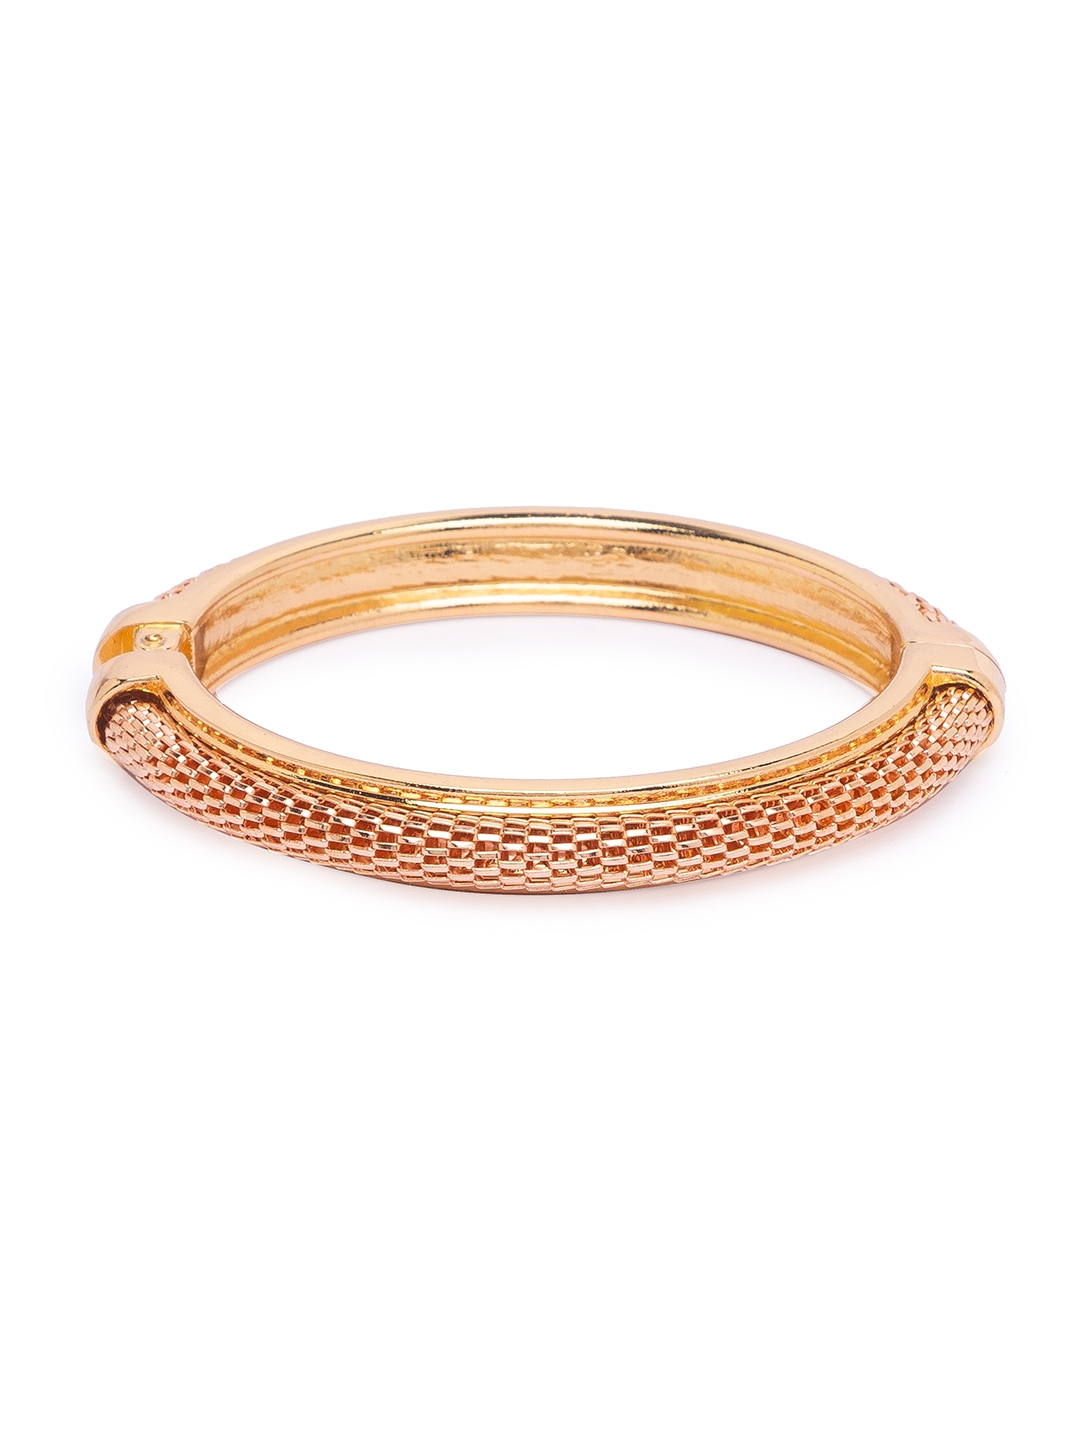 globus | Globus Gold Cuff Bracelet